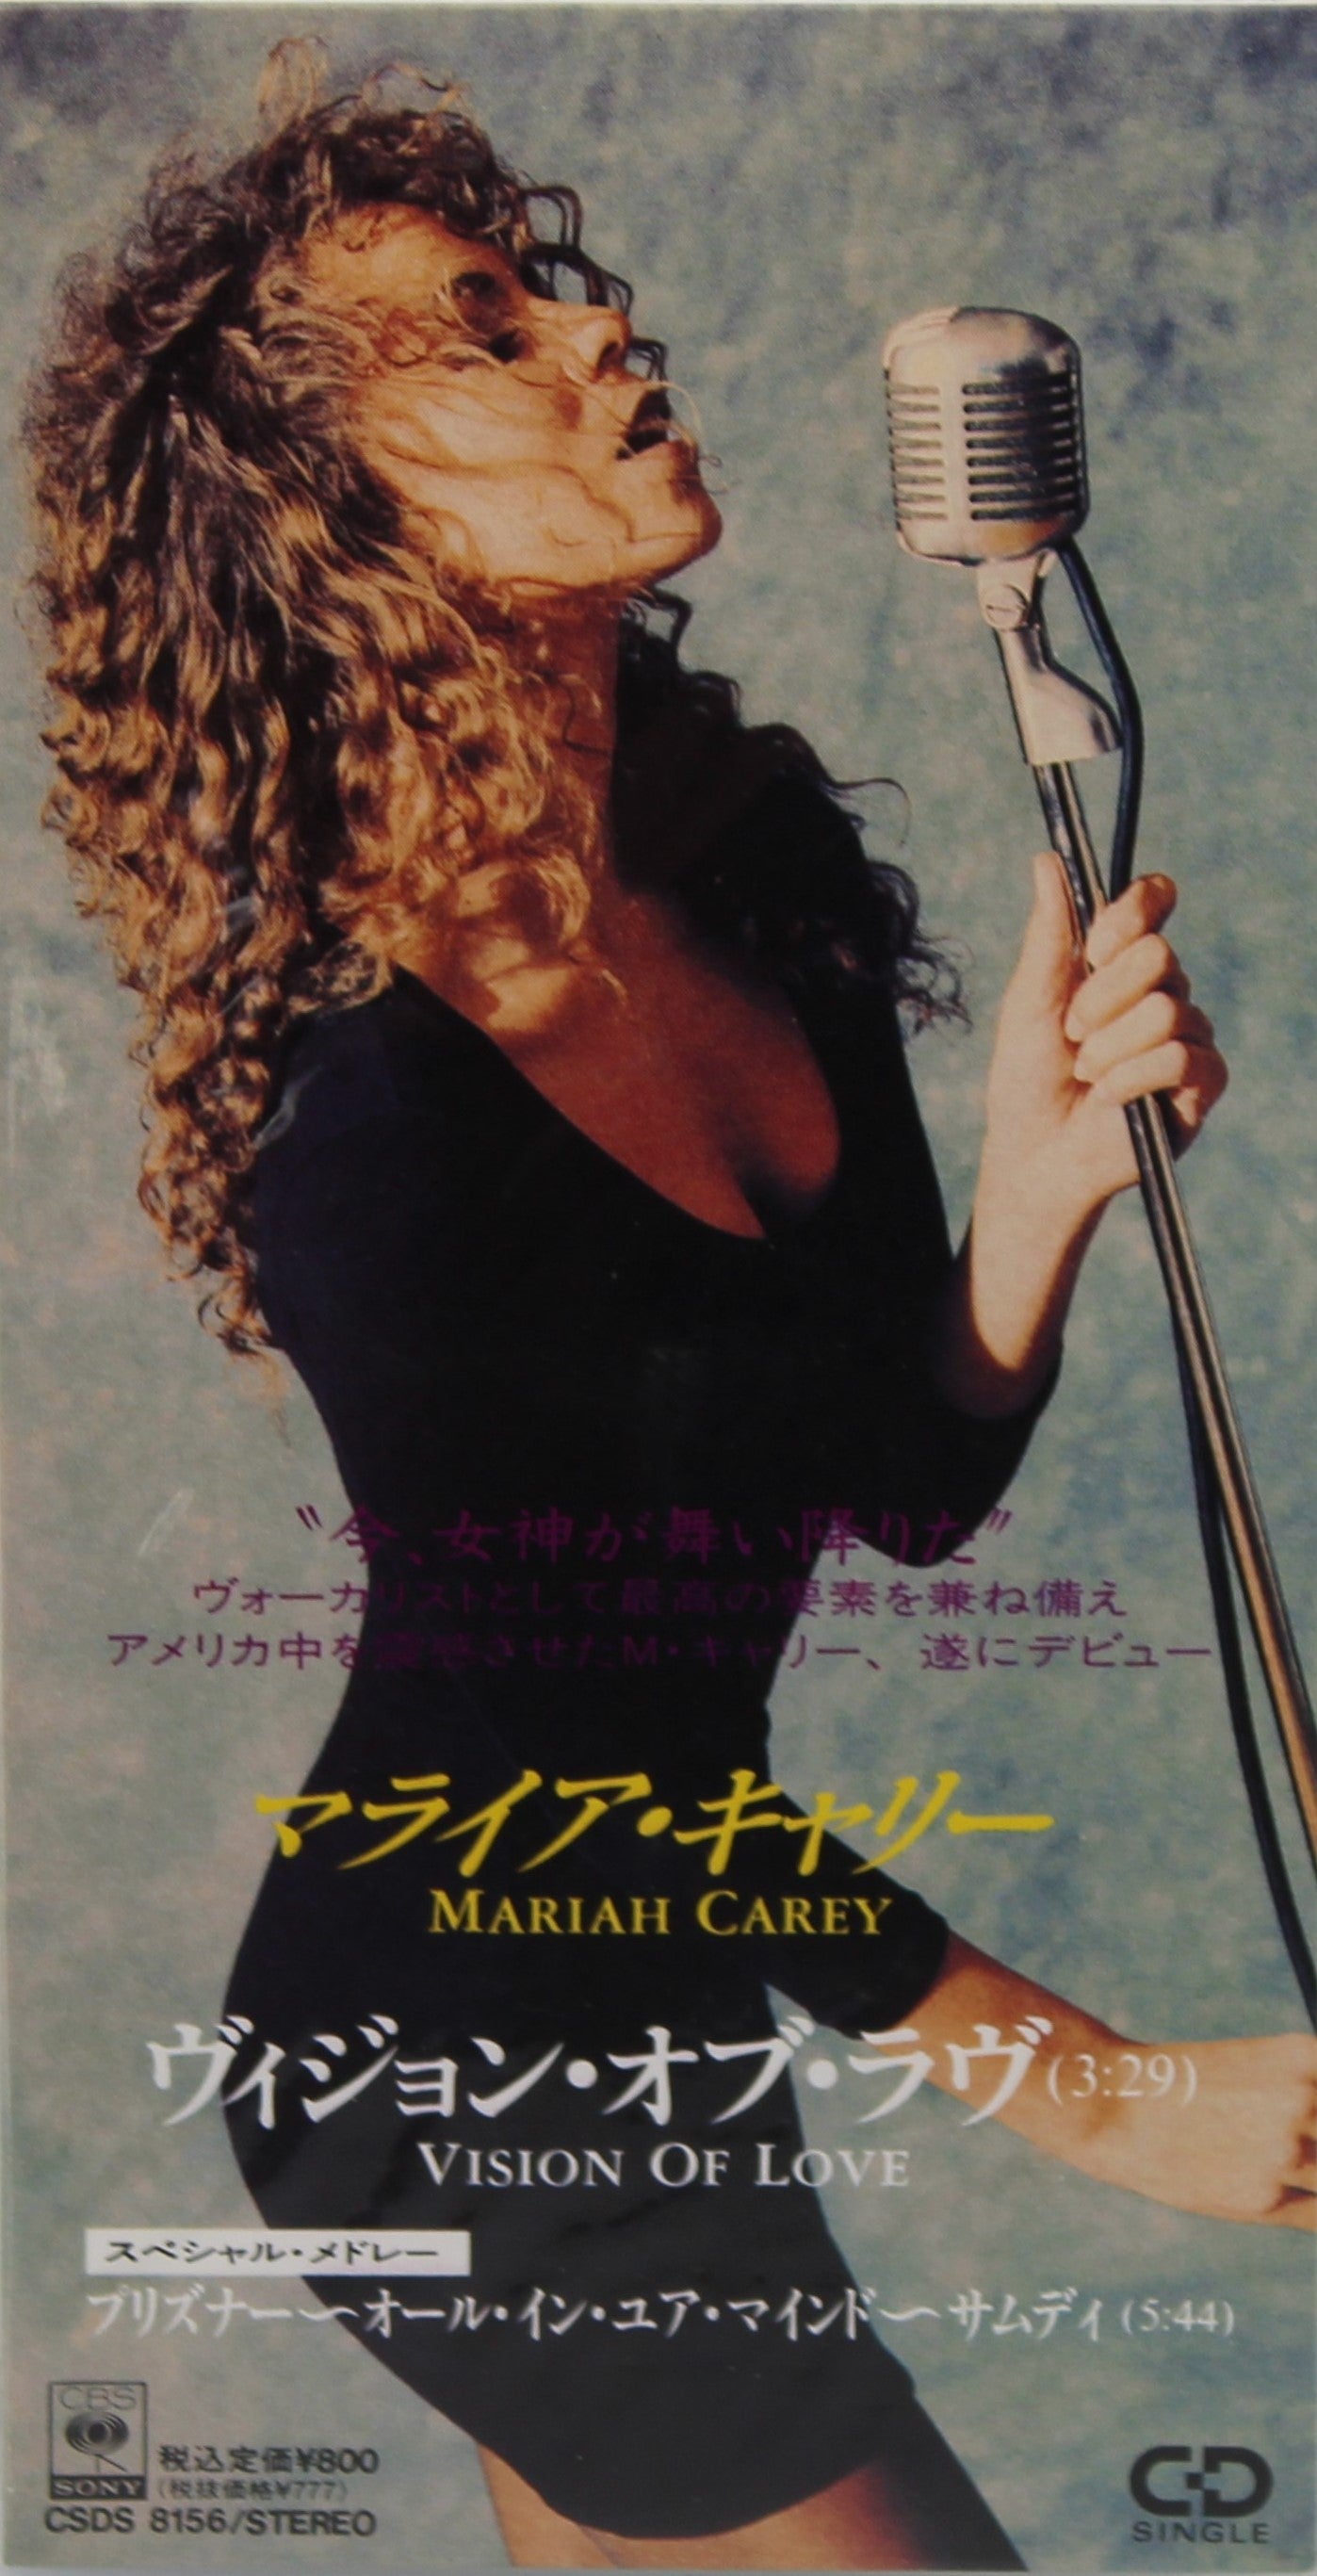 Mariah Carey – Vision Of Love, CD, Single, Mini, Japan 1990 